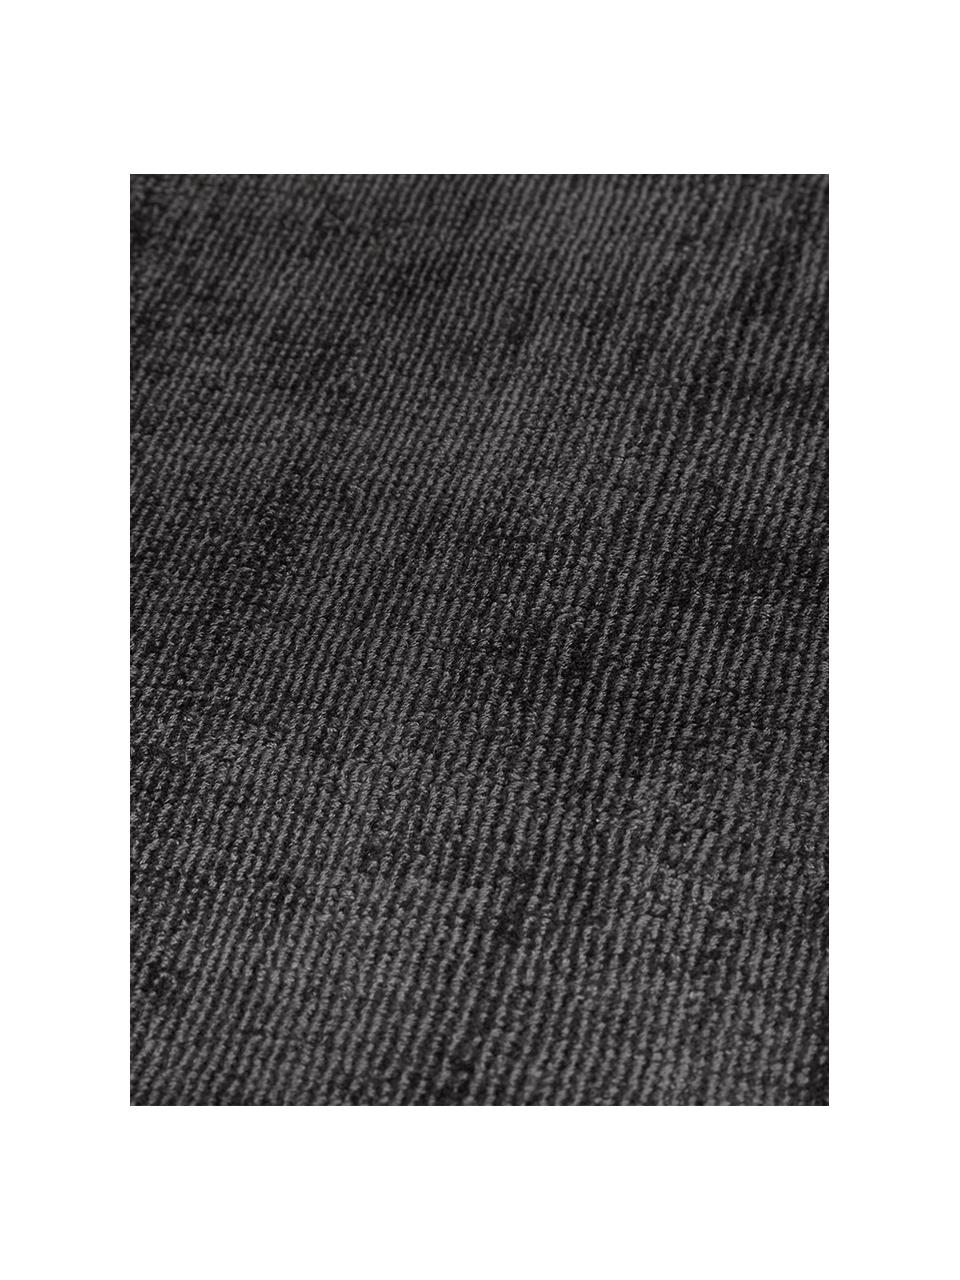 Tapis noir en viscose tissé main Jane, Anthracite-noir, larg. 200 x long. 300 cm (taille L)